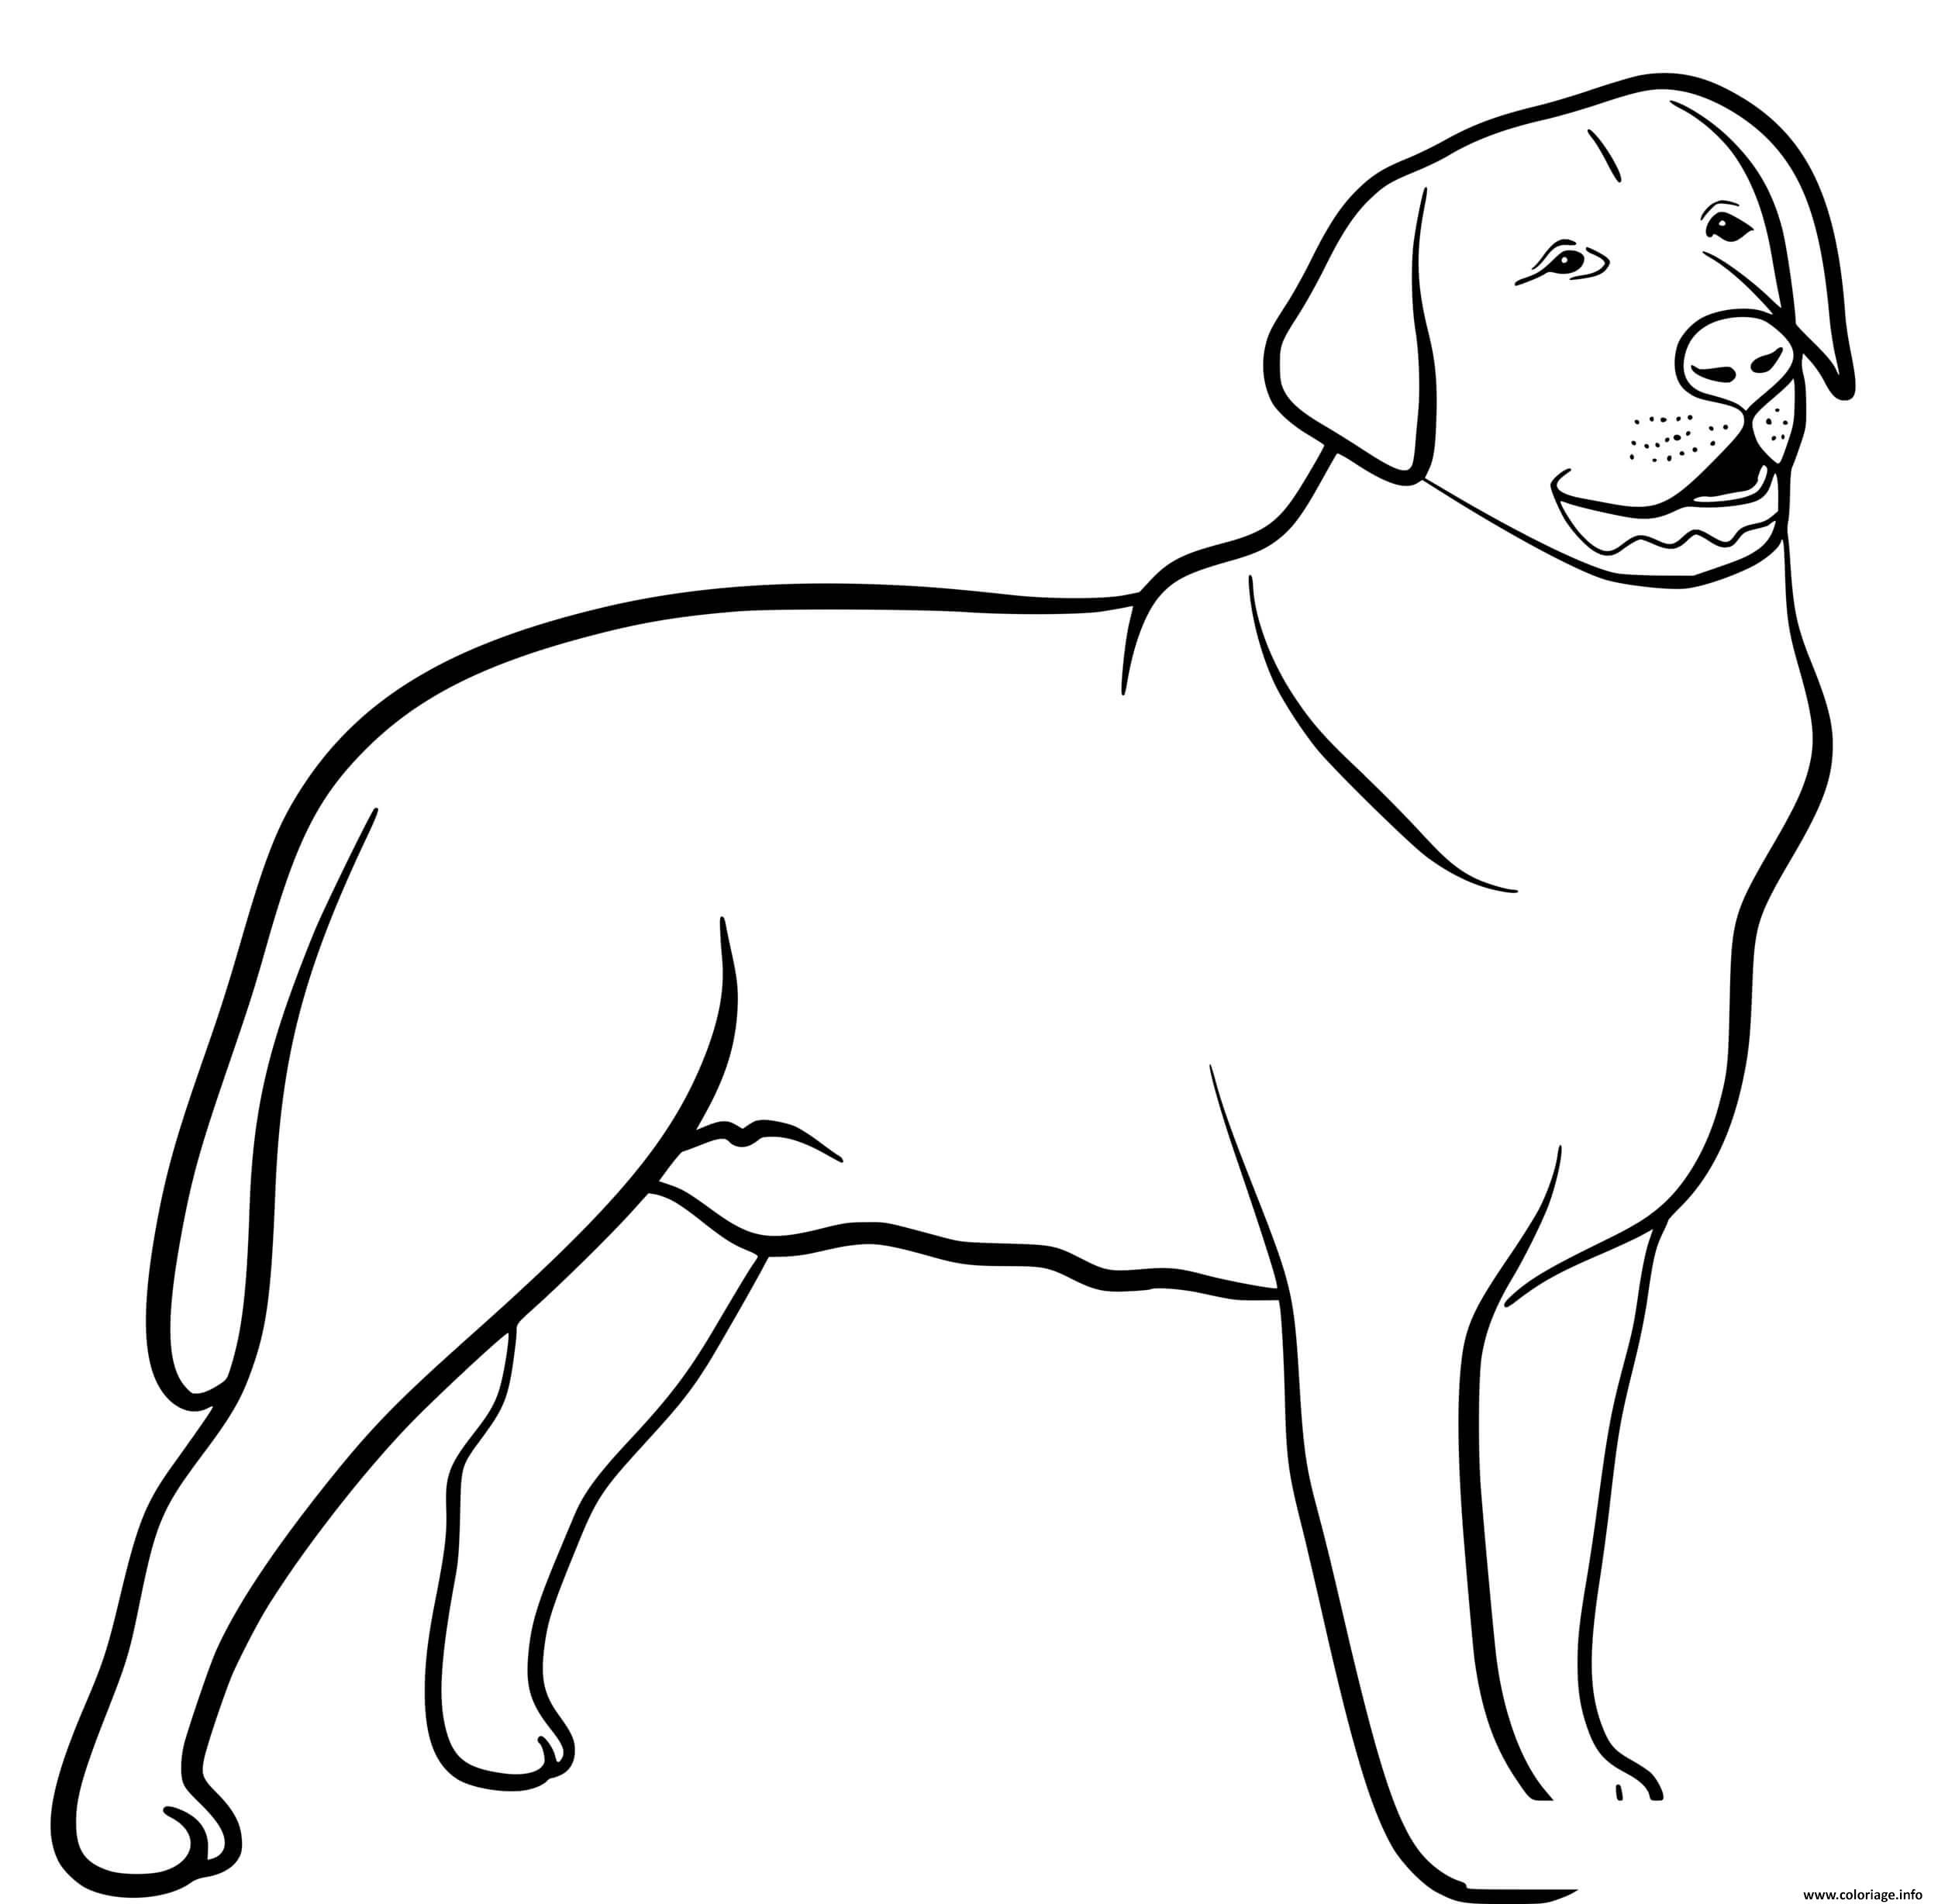 Dessin Labrador Retriever dog Coloriage Gratuit à Imprimer